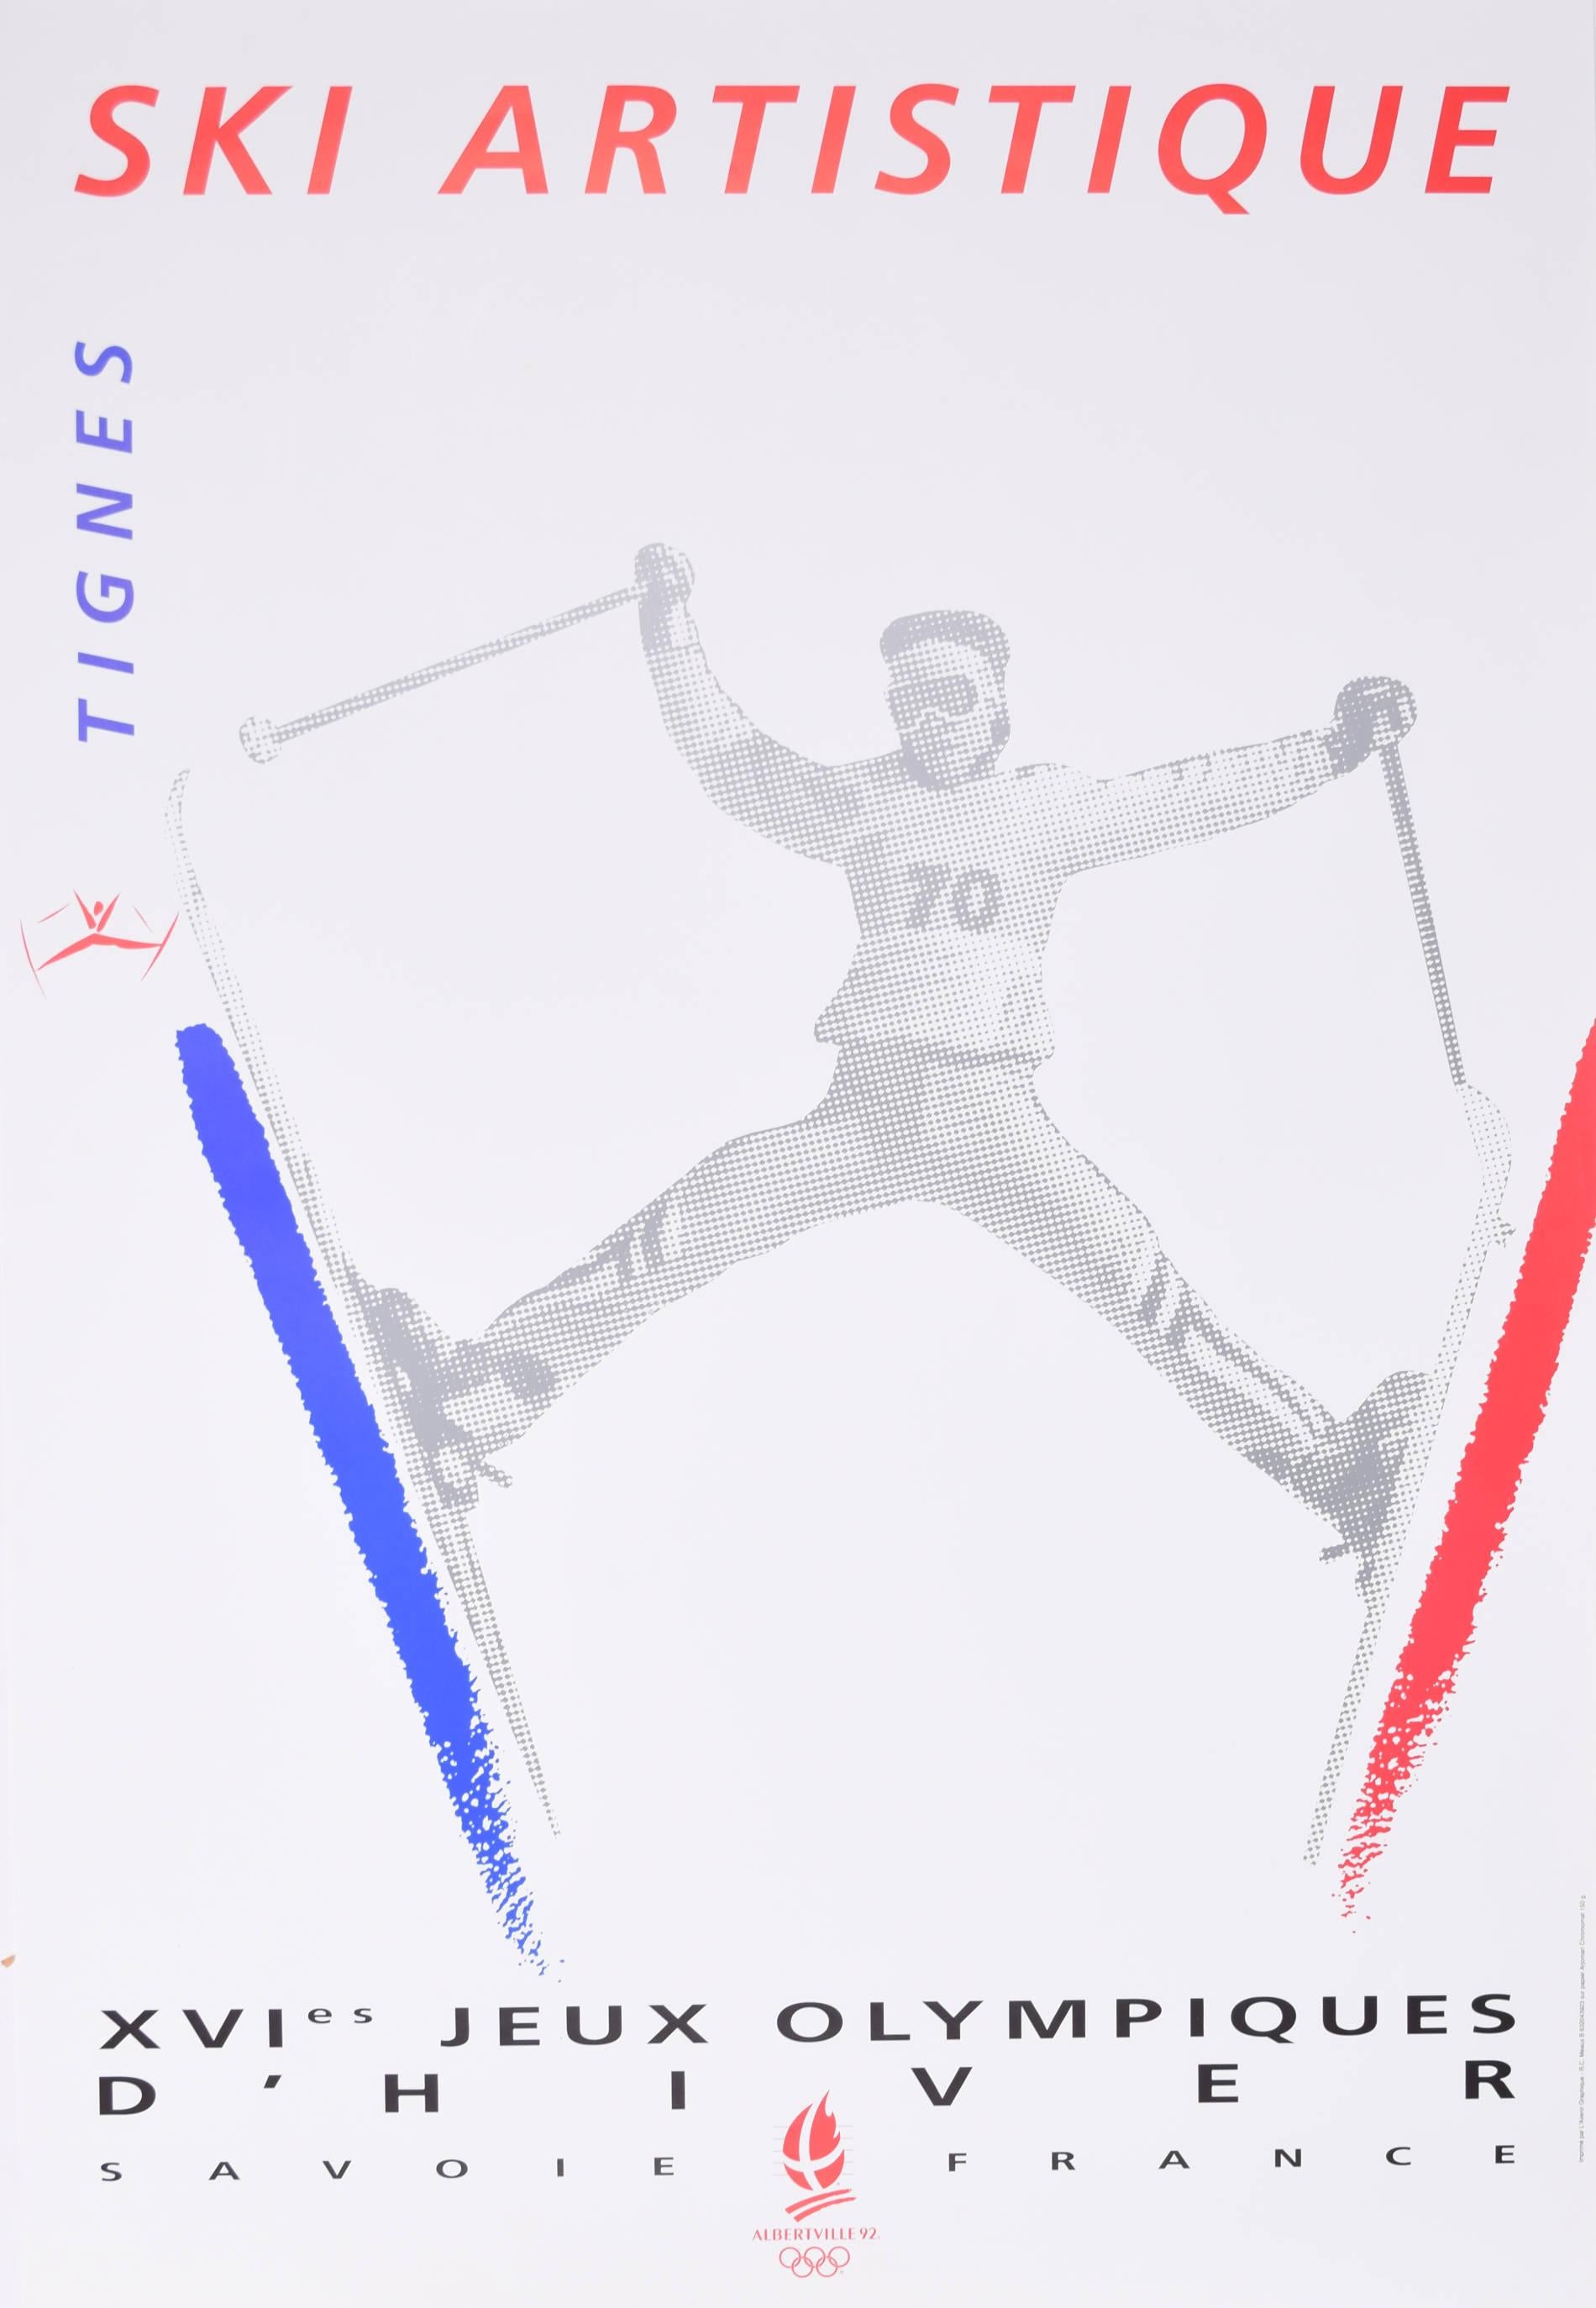 Tignes 1992 Winter Olympics Ski Artistique original 1990 vintage poster by Meaux - Print by R C Meaux